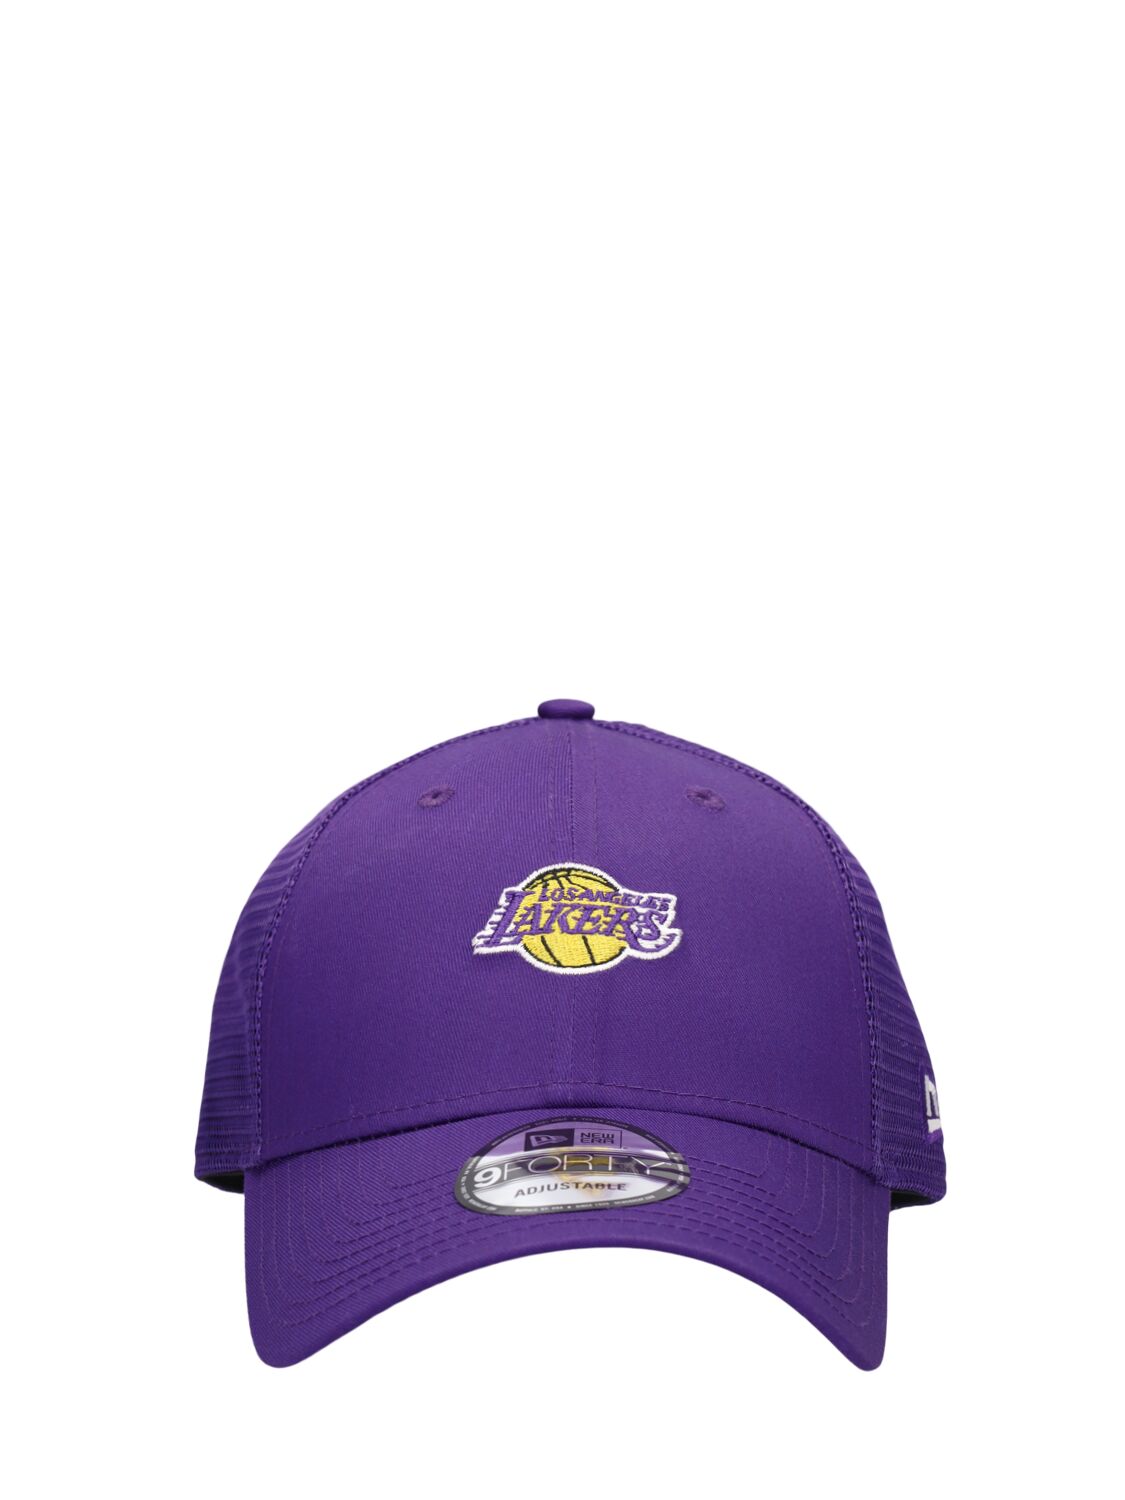 New Era La Lakers 9forty Trucker Cap In Purple,yellow